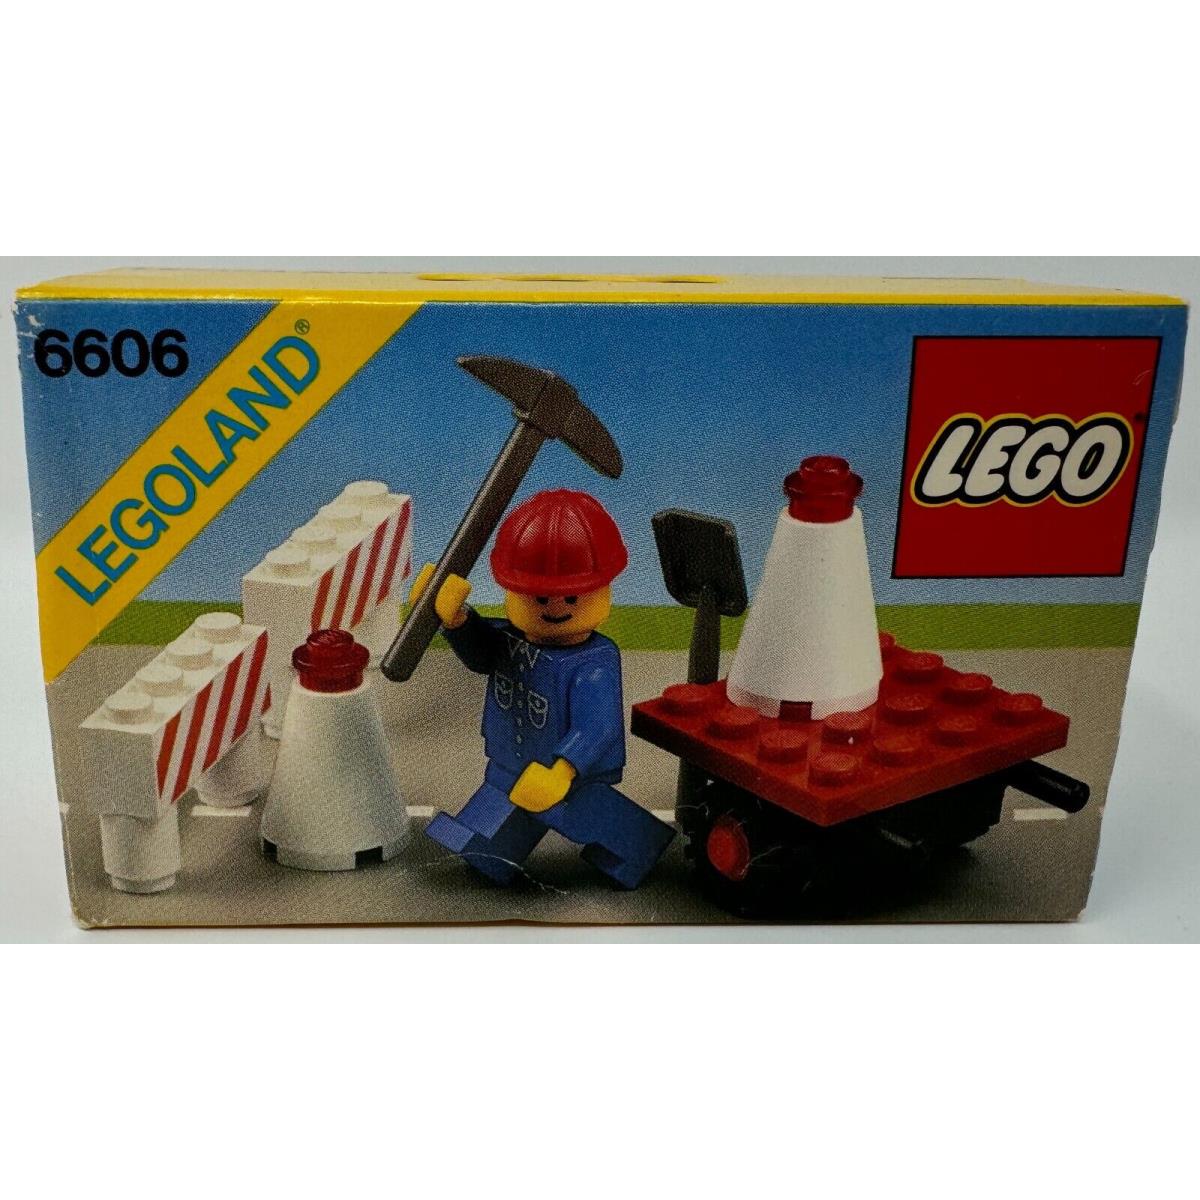 Lego 6606 Road Repair Set 1983